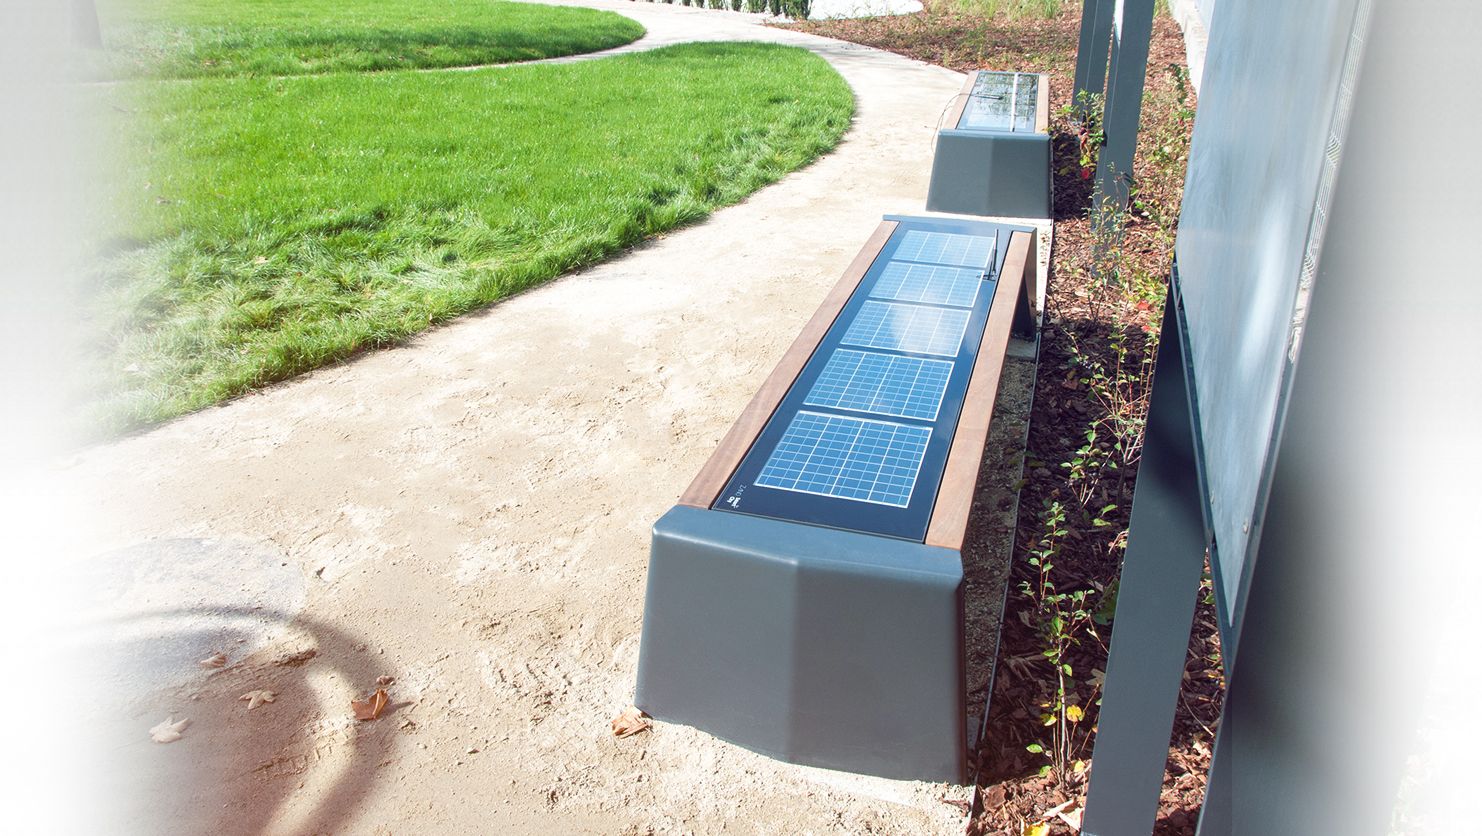 Photon series solar benches